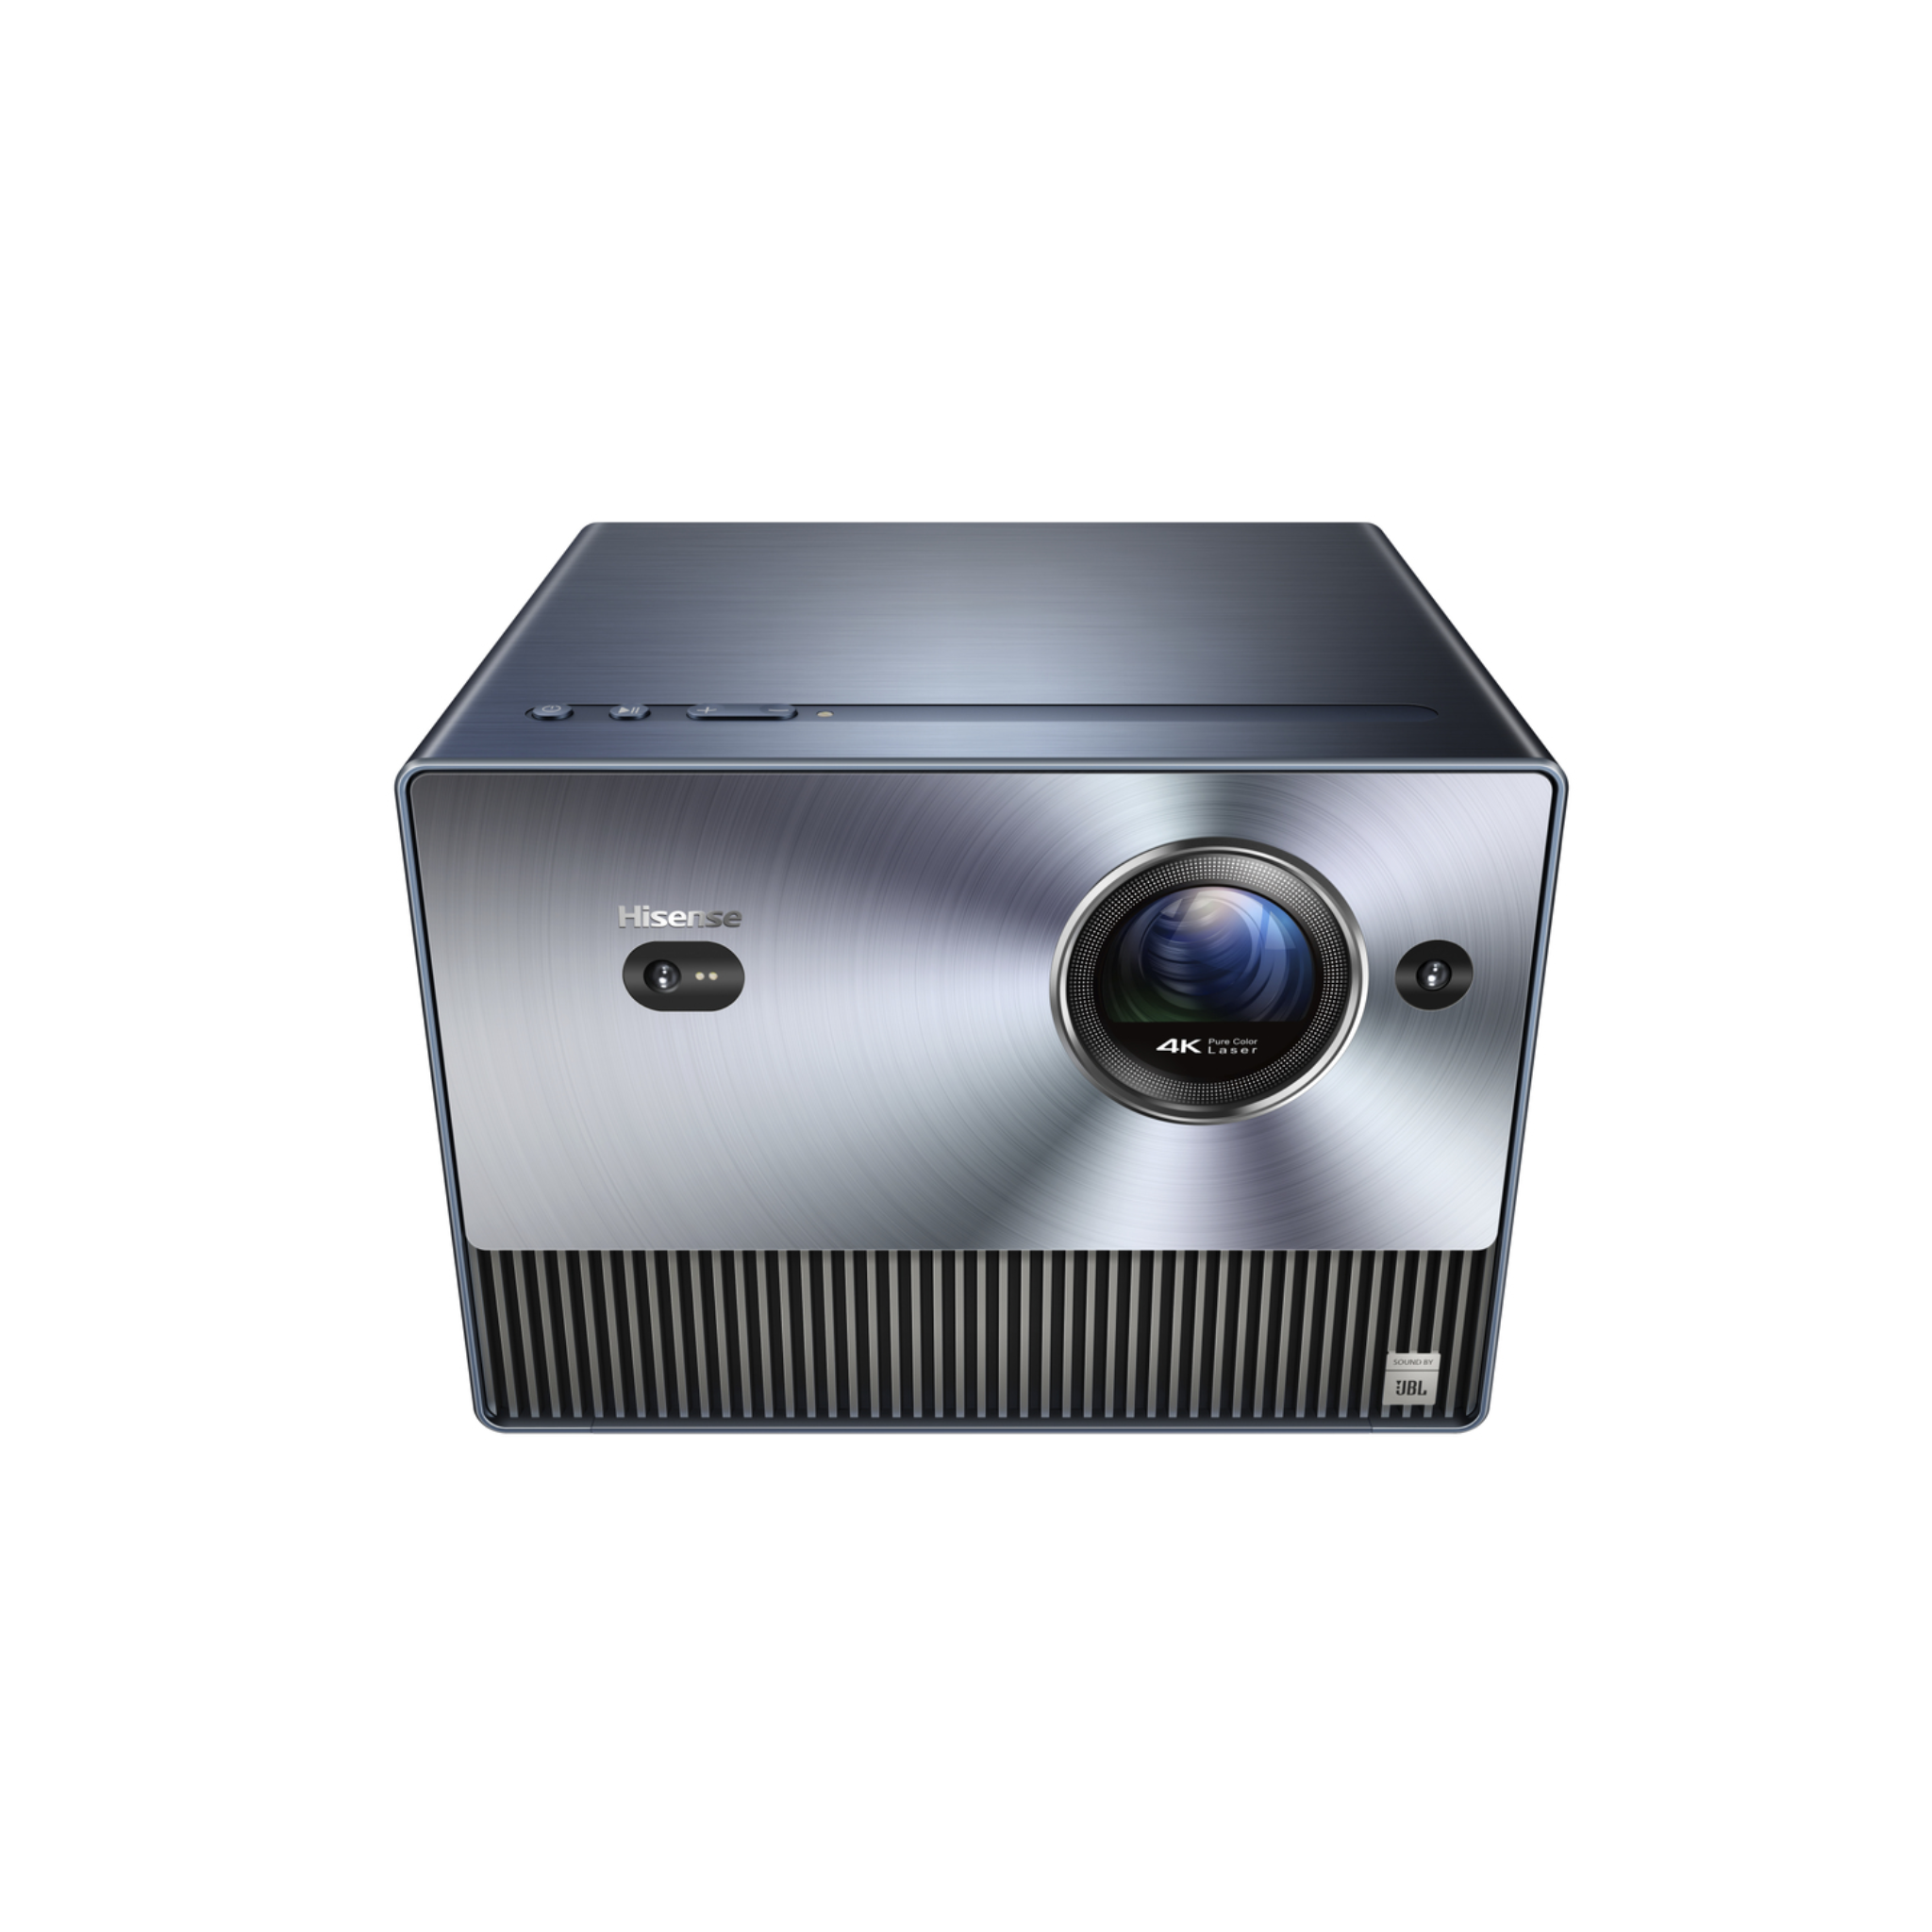 Hisense C1TUK - DLP Tri Laser 4K UHD HDR Smart Portable Projector